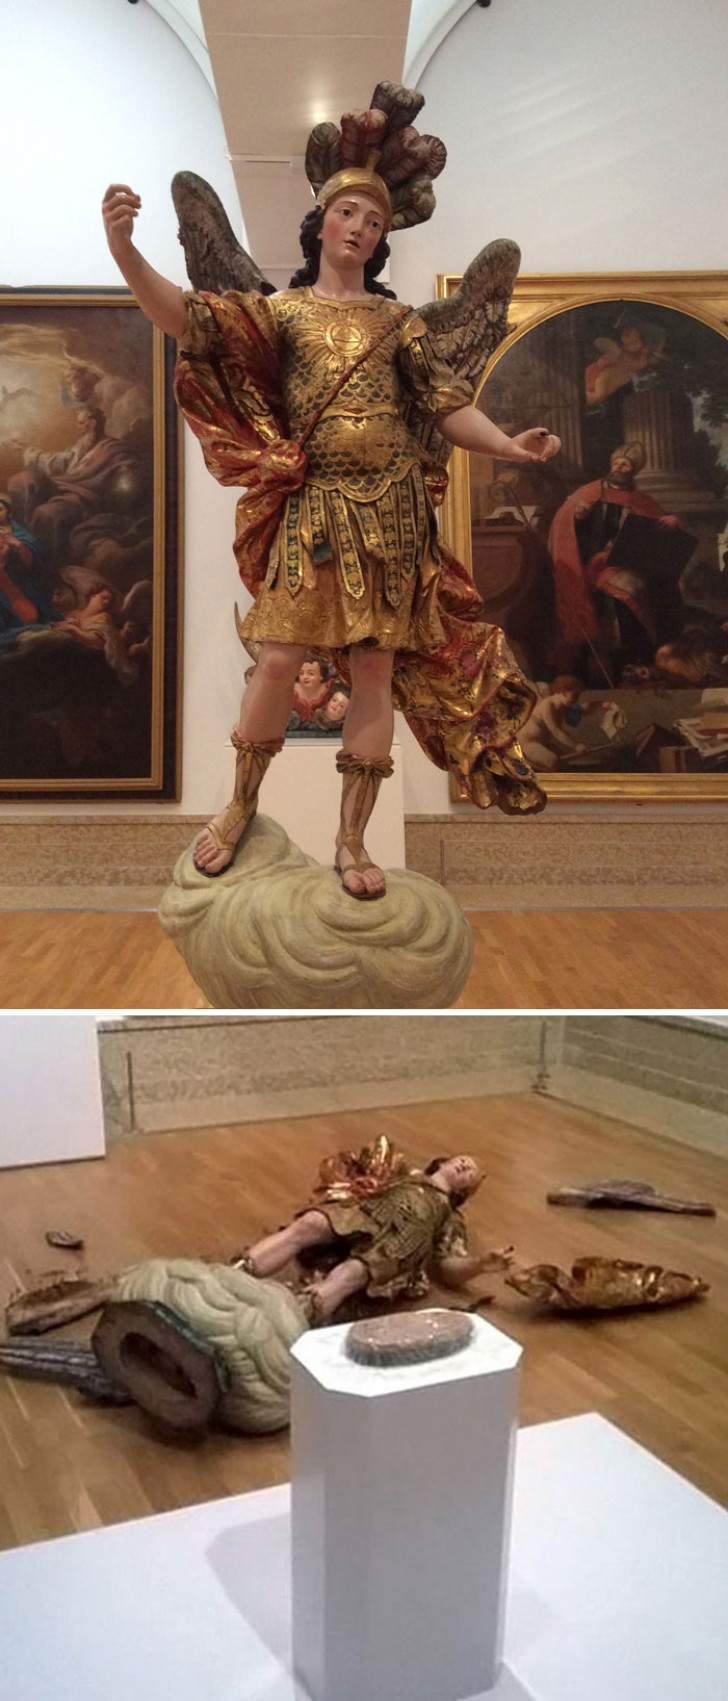 A Lisbona un turista ha cercato di fare un selfie con la statua di San Michele, provocando però una caduta rovinosa della preziosa scultura!